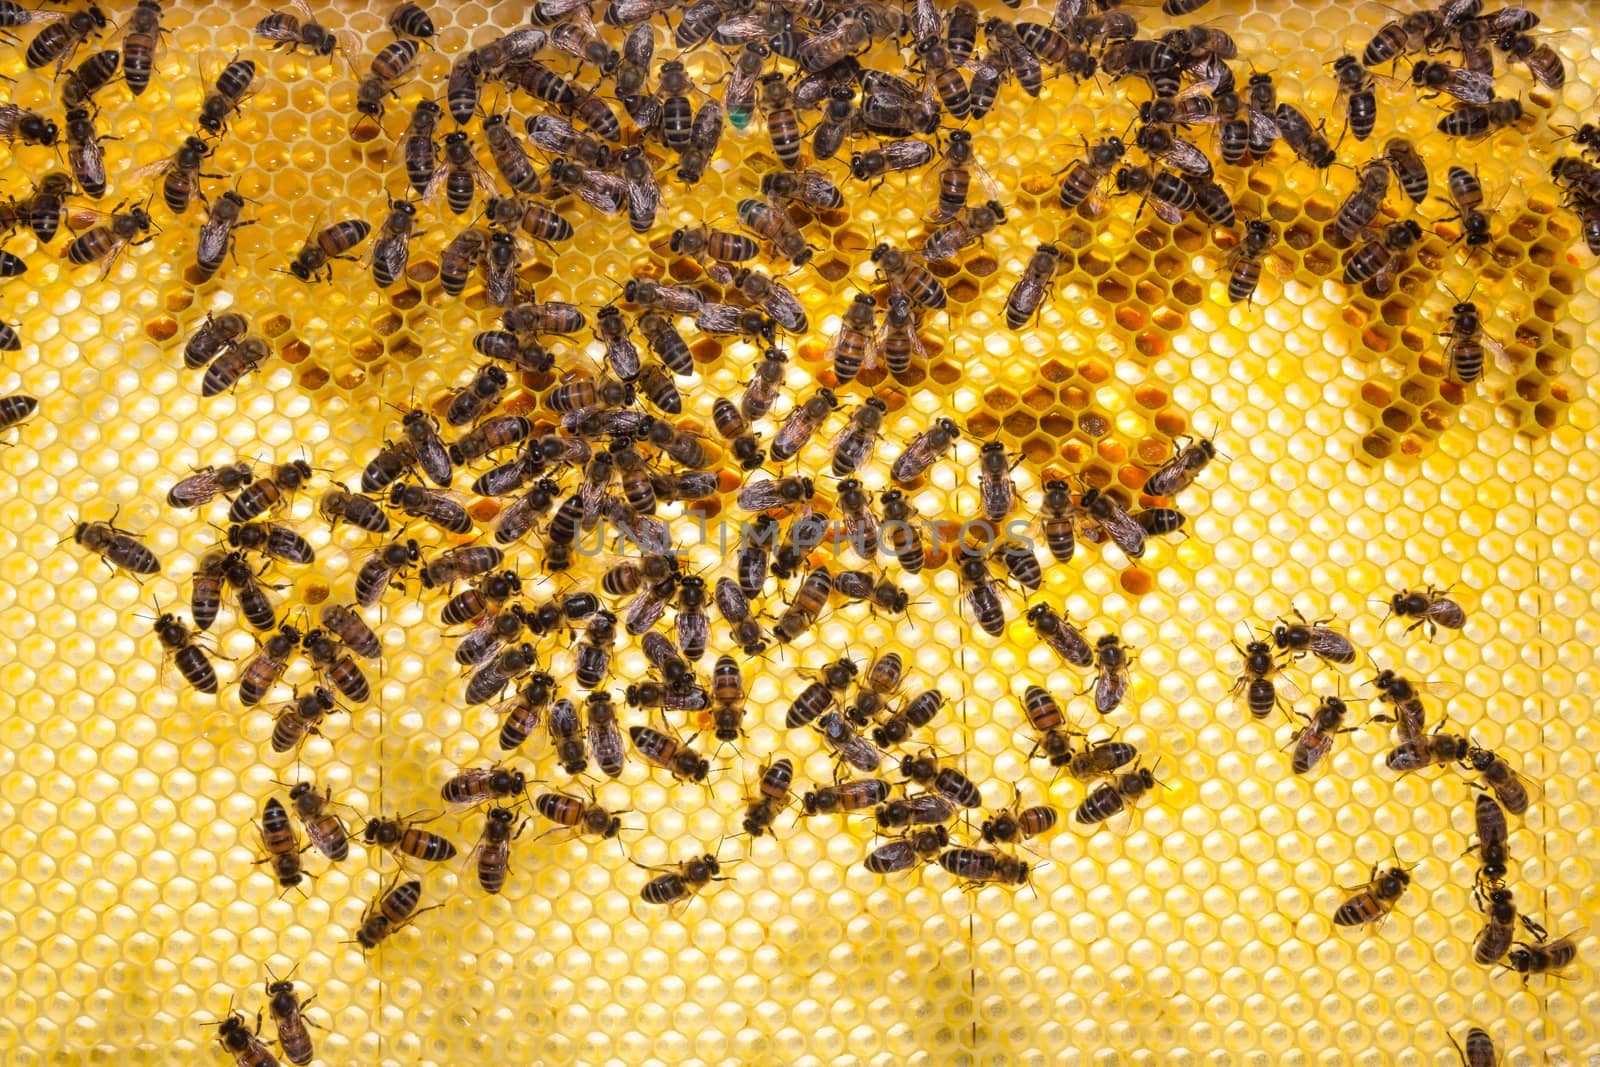 Bees on honeycomb in a beehive by ikonoklast_fotografie